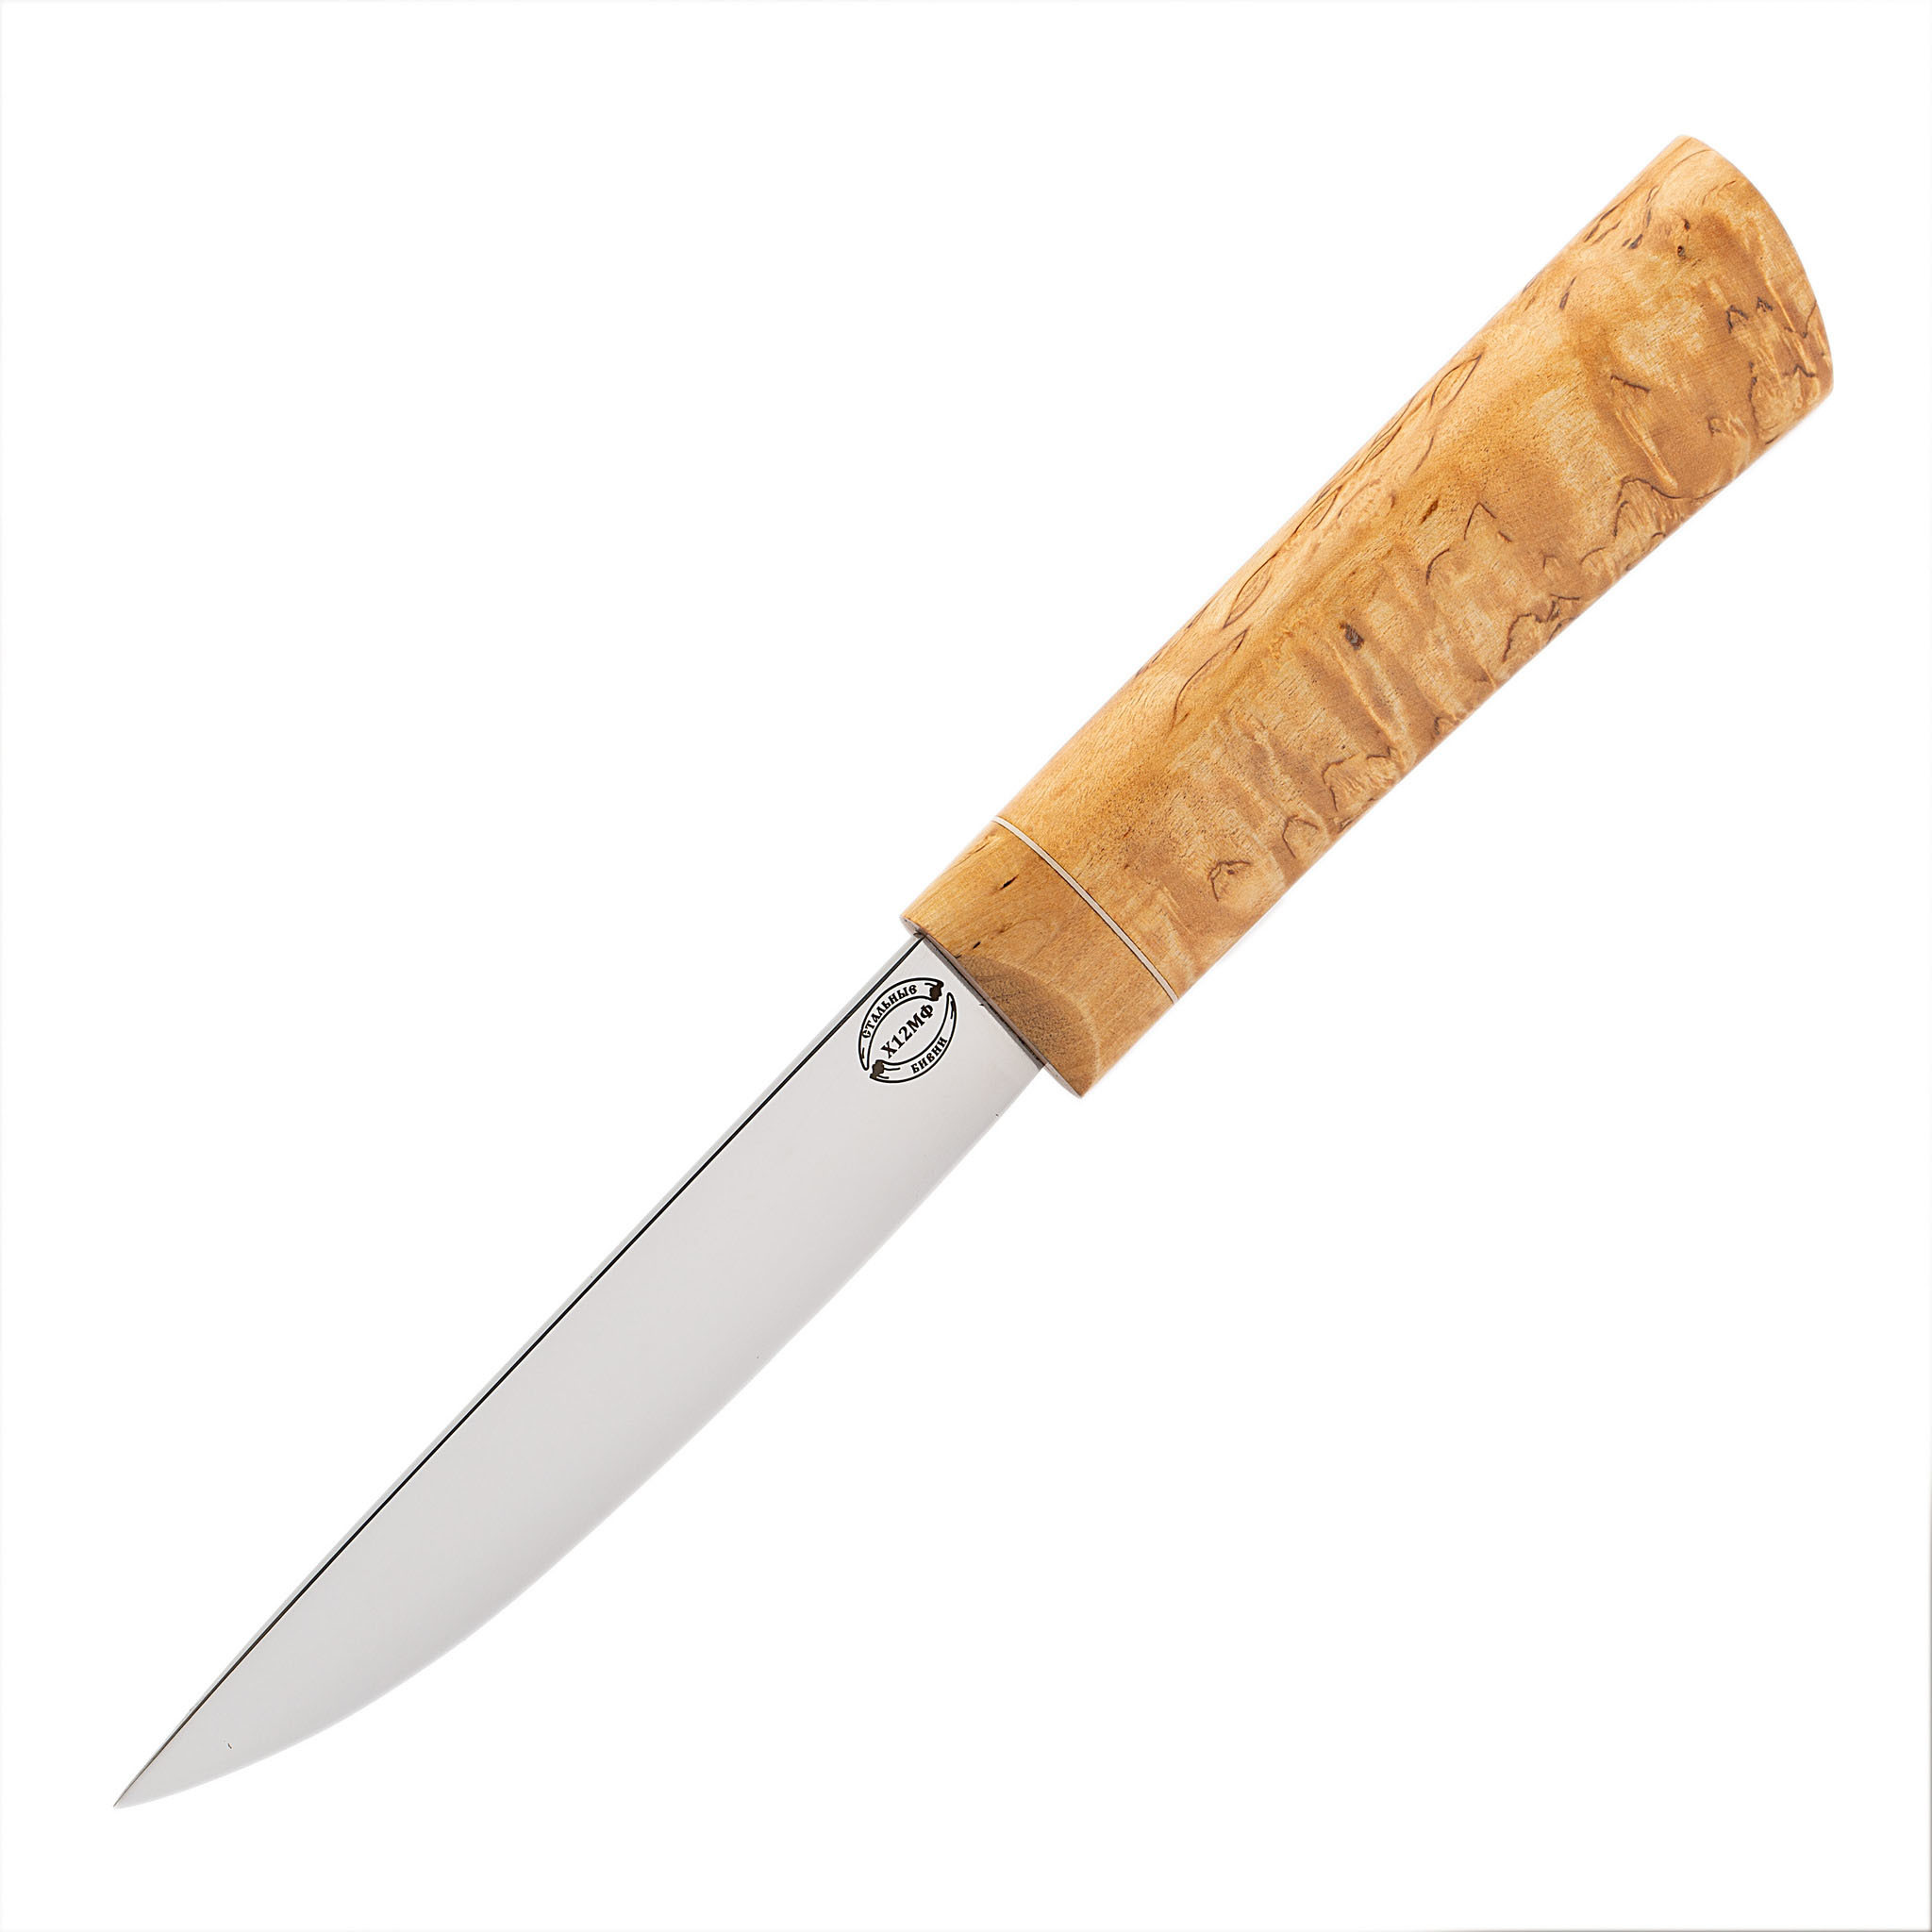 Нож Якутский средний, сталь Х12 МФ, рукоять карельская береза нож якутский средний сталь х12мф рукоять карельская береза